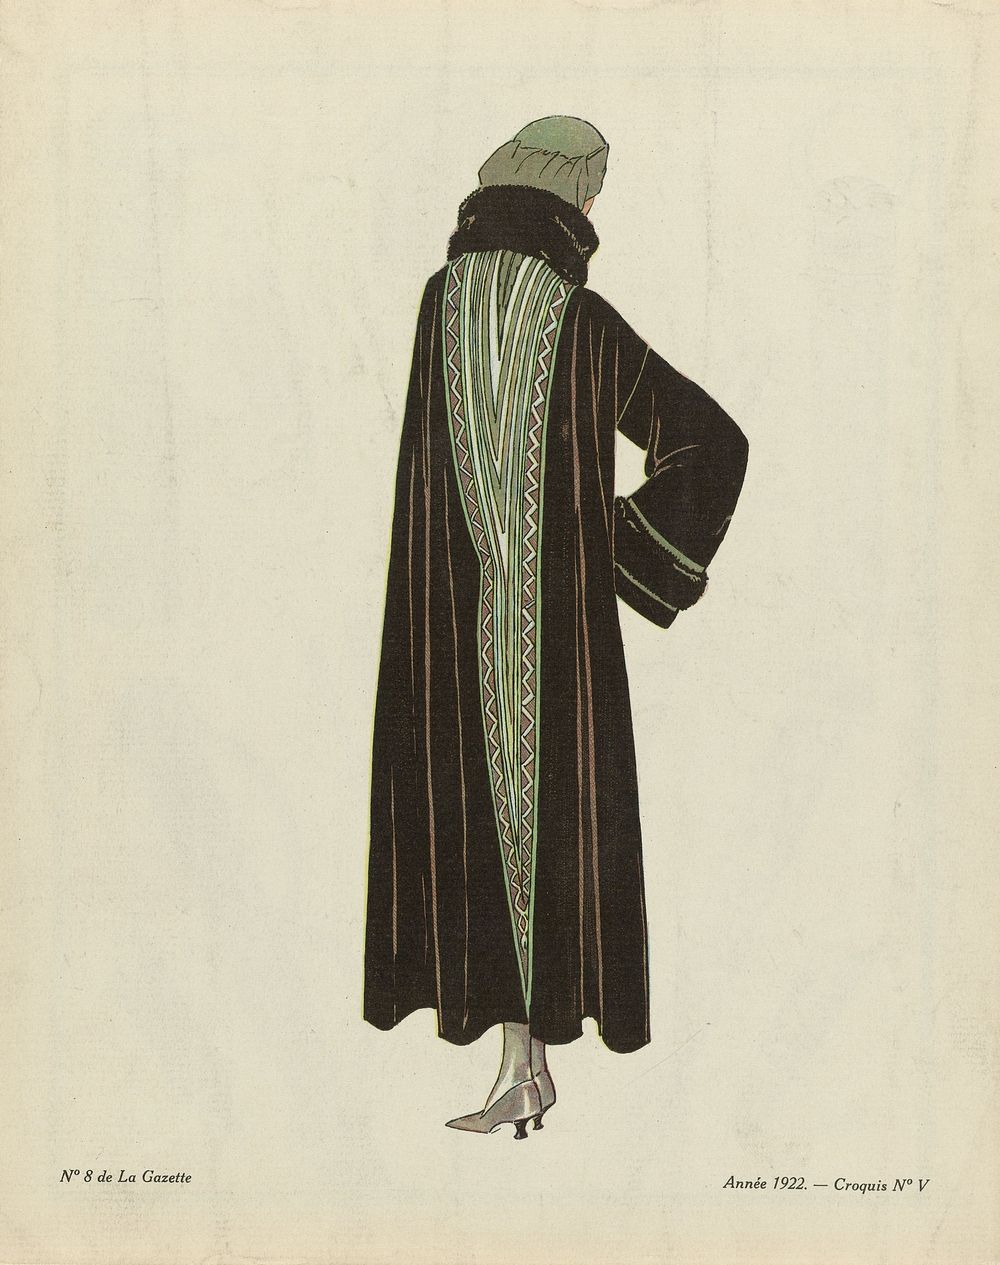 Evening Cloaks from the Gazette du Bon Ton (1922) by anonymous, Lucien Vogel, Condé Nast Publisher and Condé Nast et Co Ltd